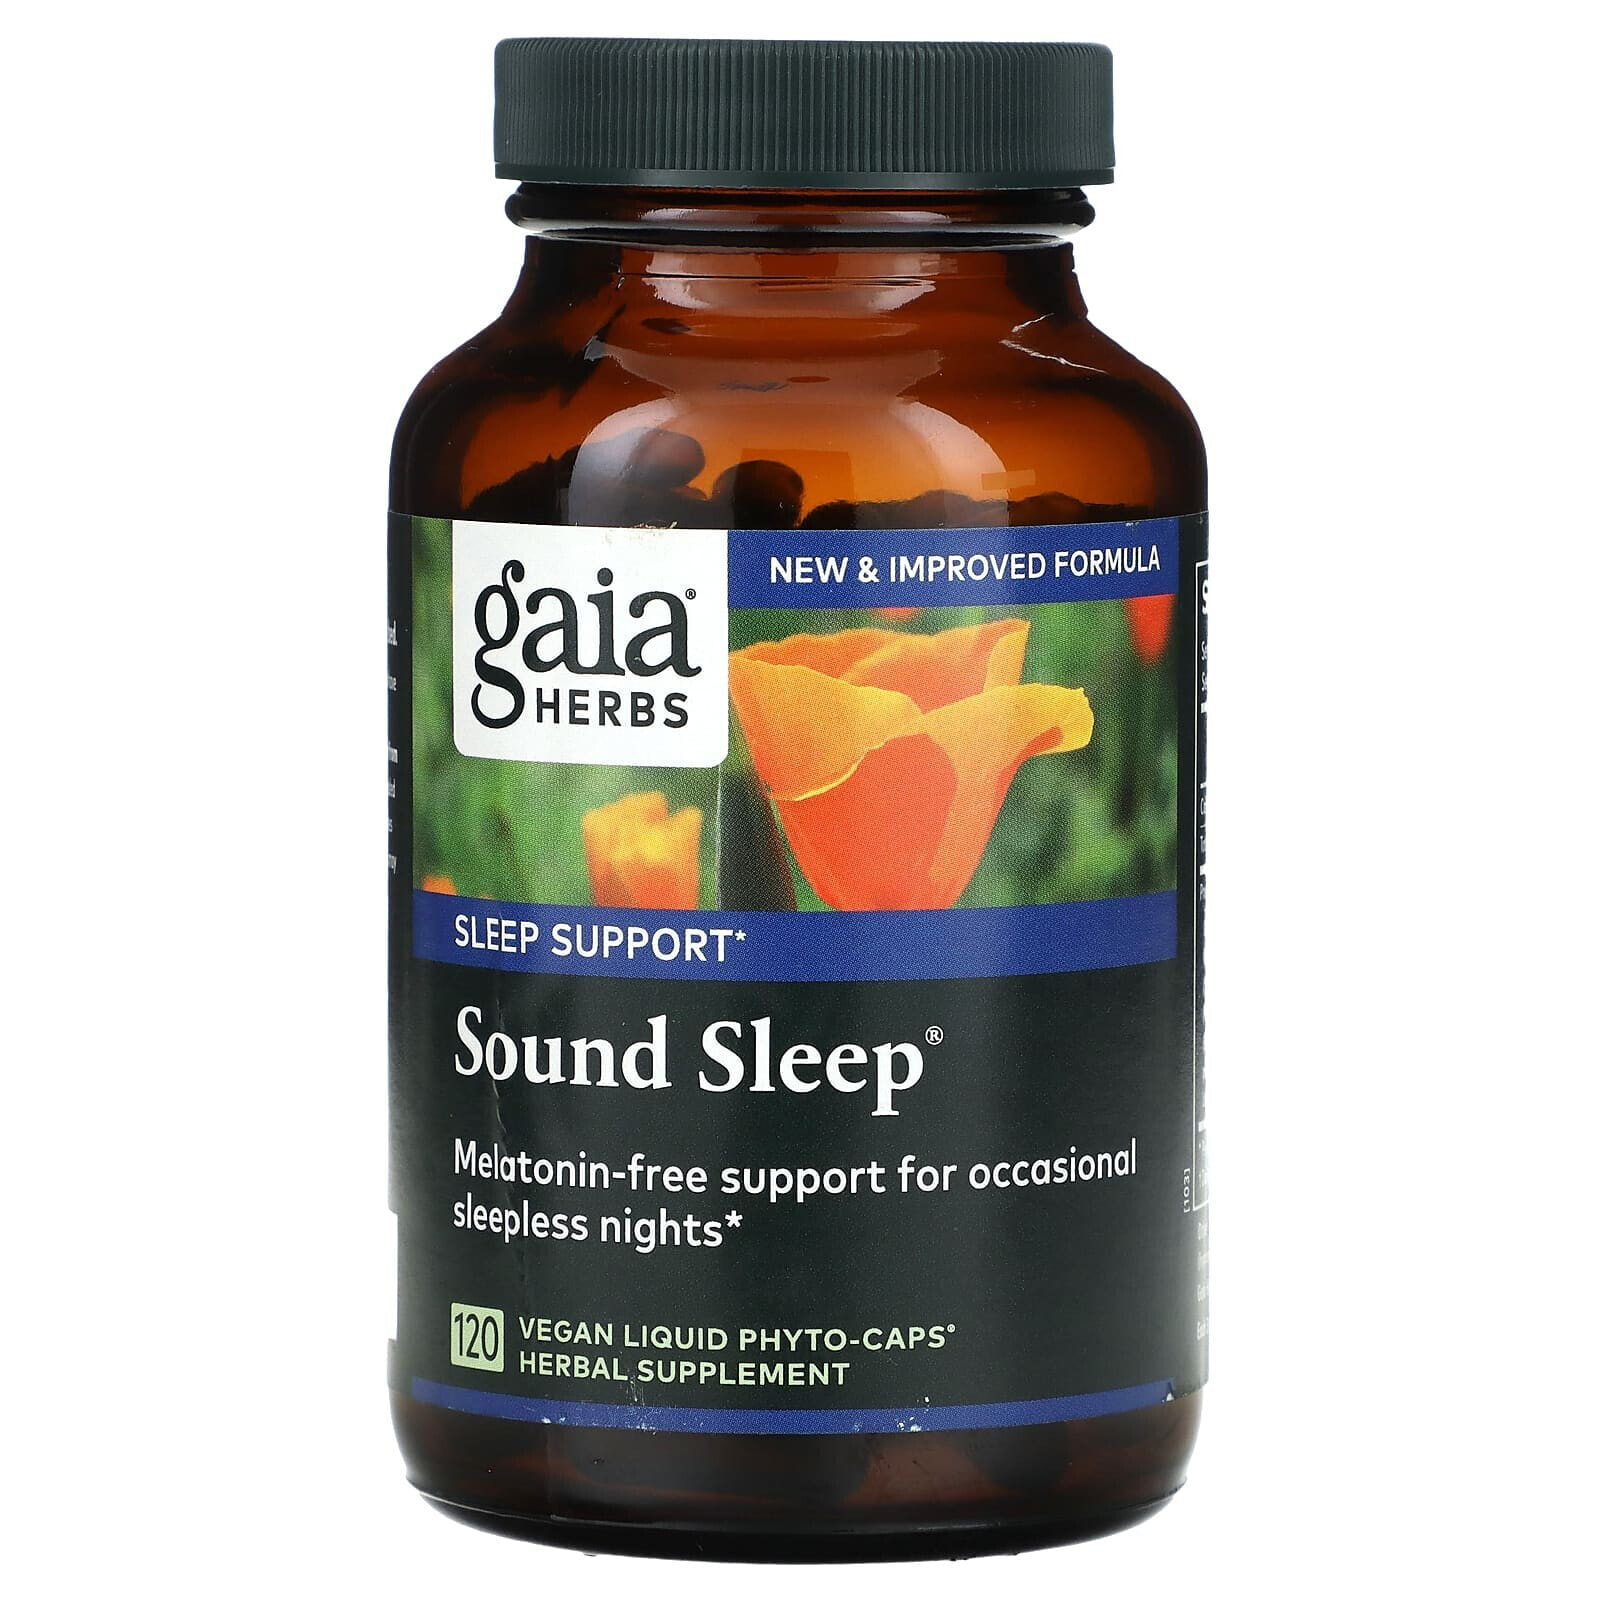 Sound Sleep, 60 Vegan Liquid Phyto-Caps